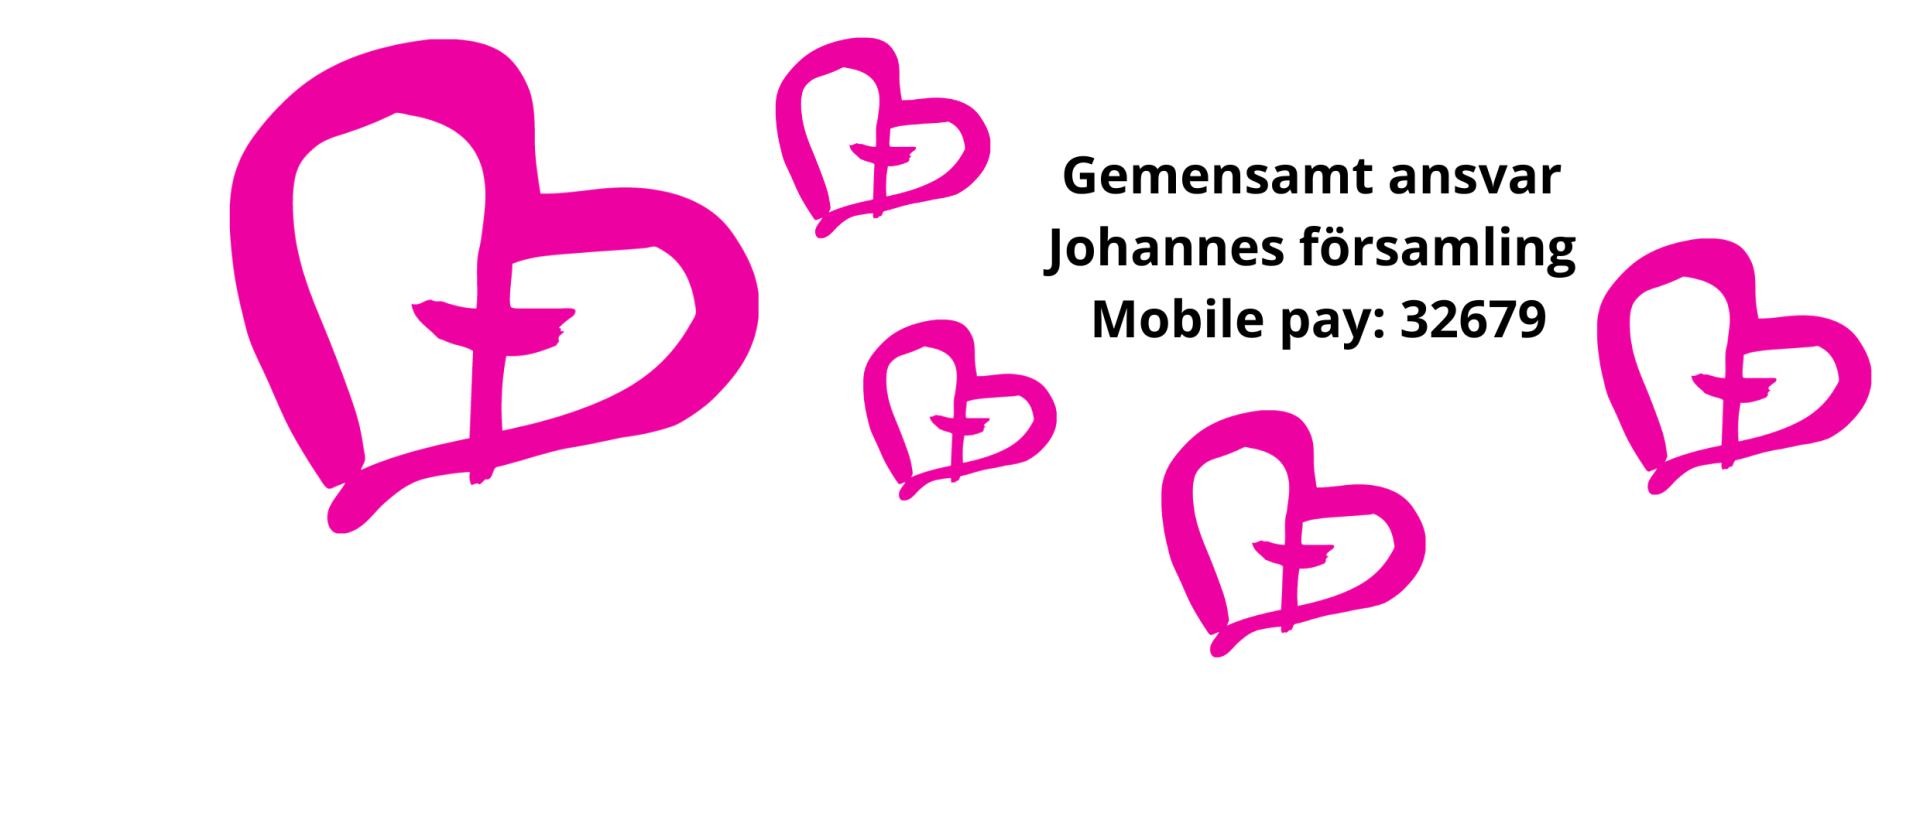 Johannes församlings mobile pay-nummer, rosa hjärtan